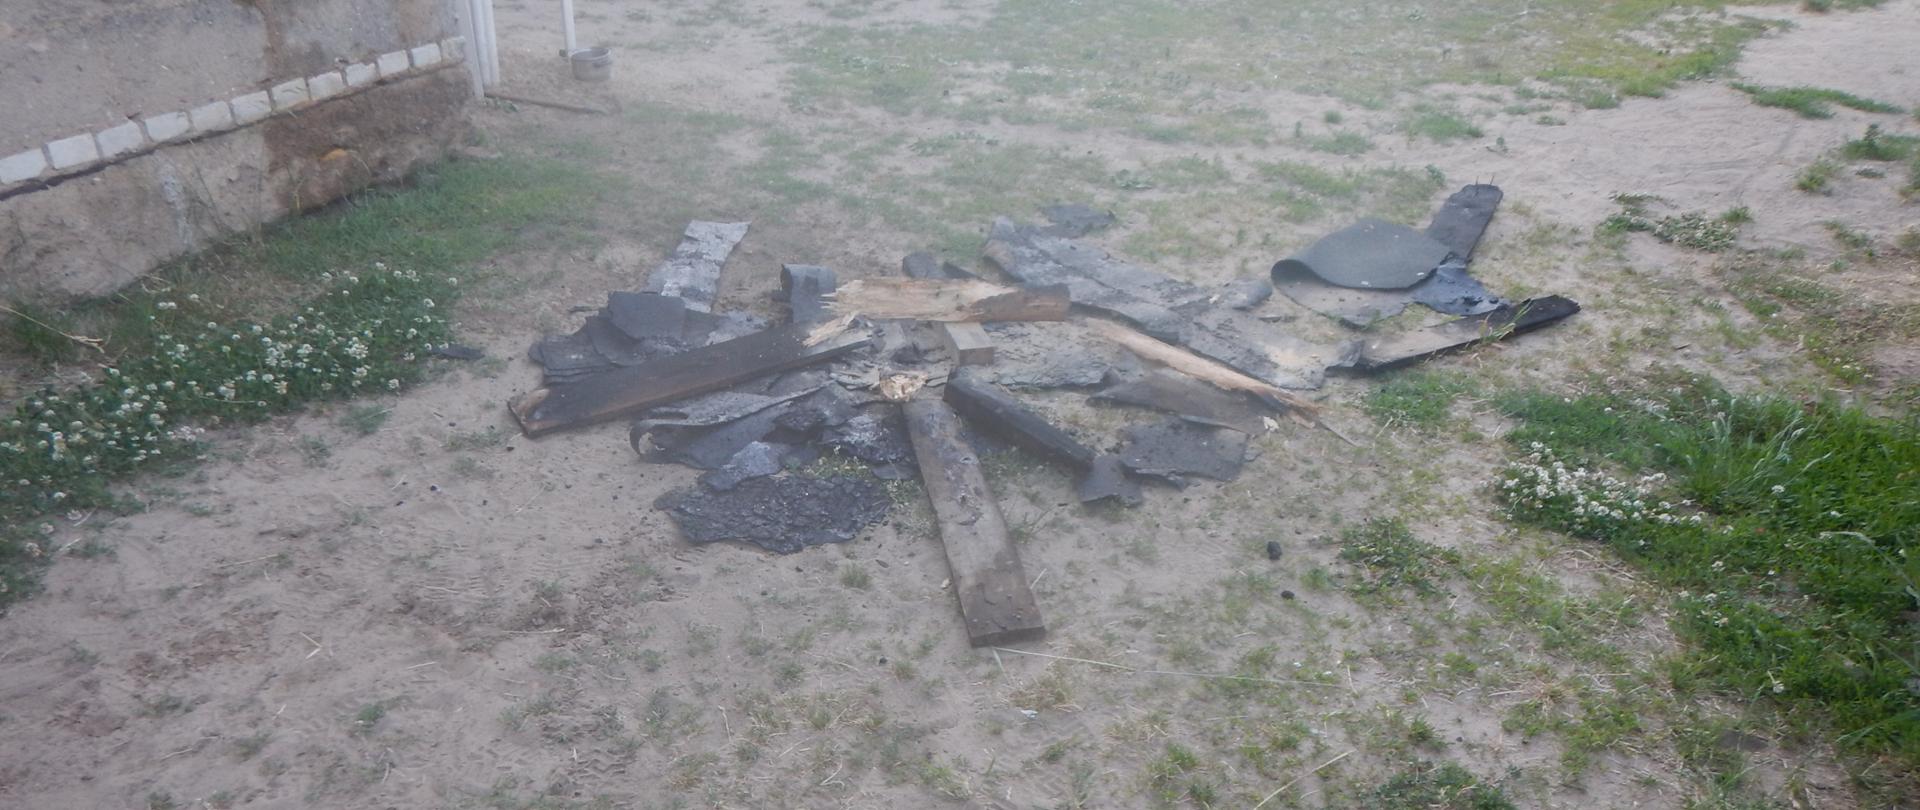 Zdjęcie przedstawia elementy poszycia dachowego, które uległy spaleniu. Deski znajdują się na podwórku posesji.